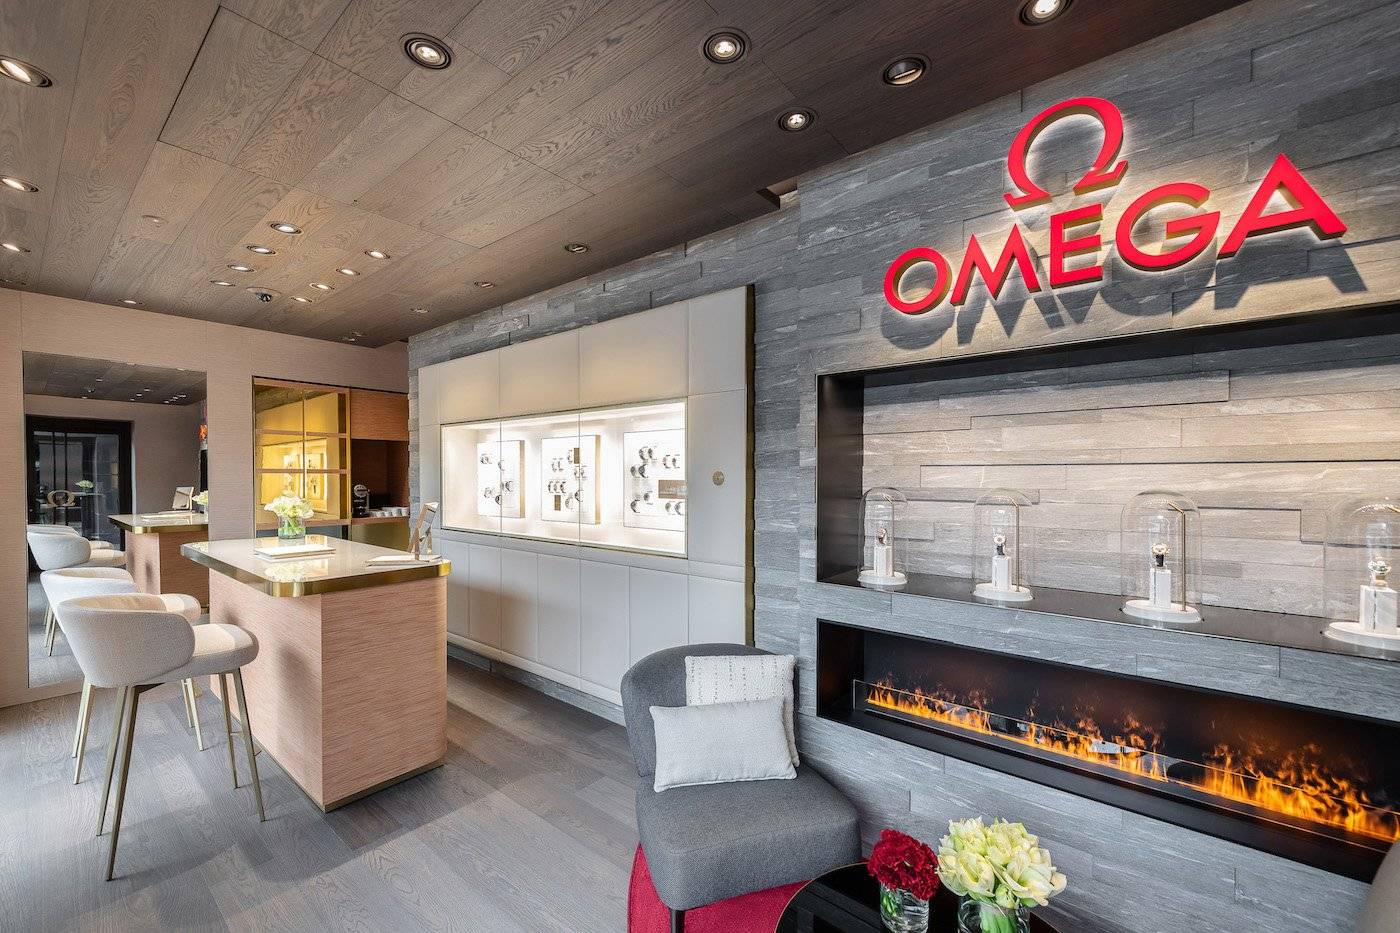 Omega abre una nueva boutique en St. Moritz